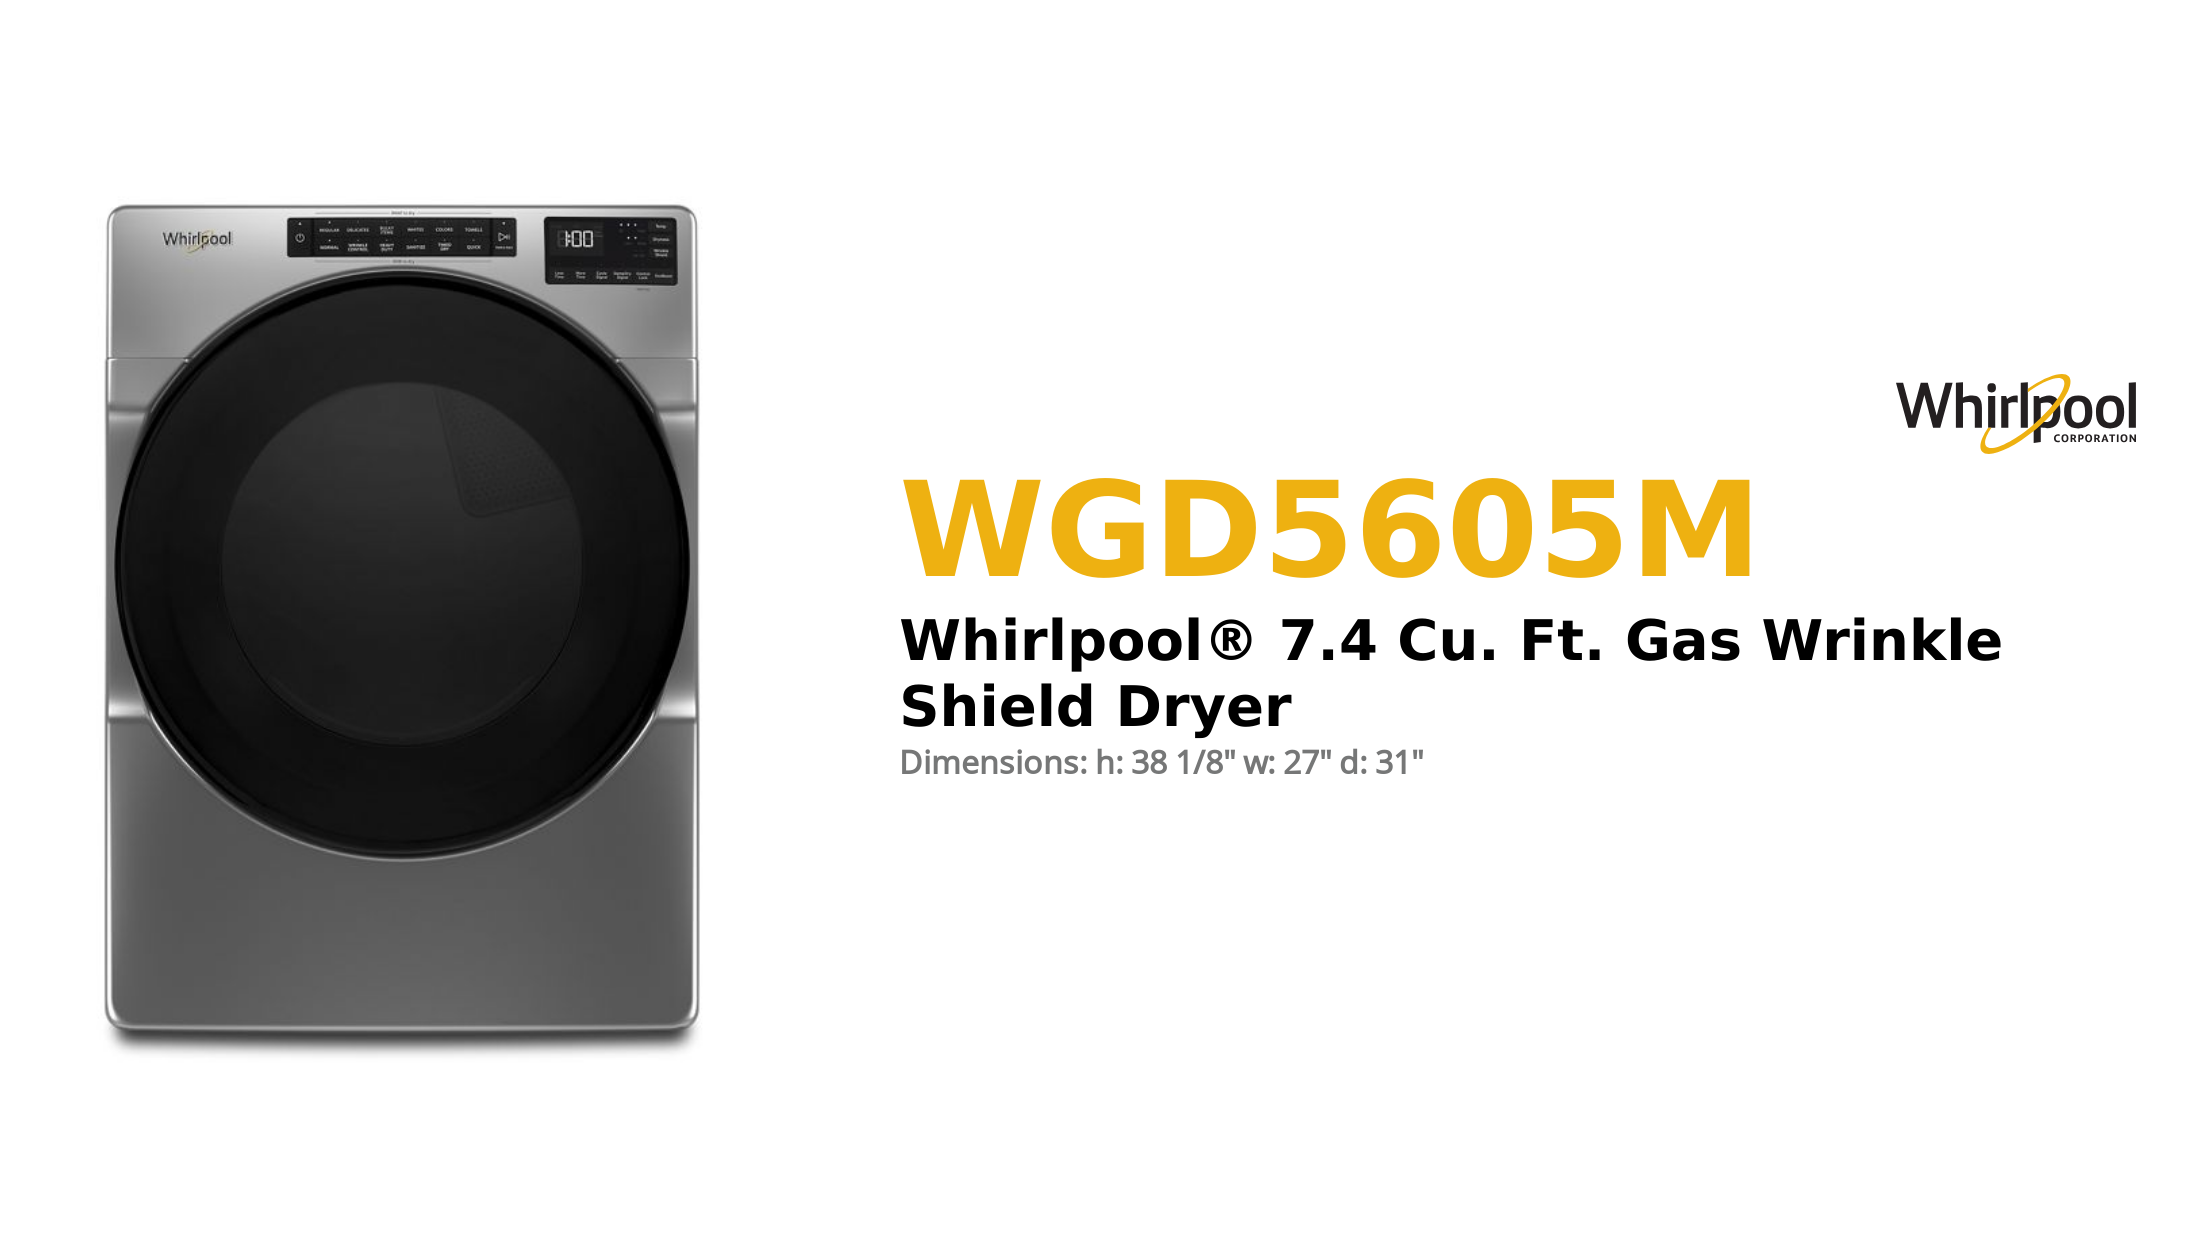 Whirlpool® 7.4 Cu. Ft. Gas Wrinkle Shield Dryer
 